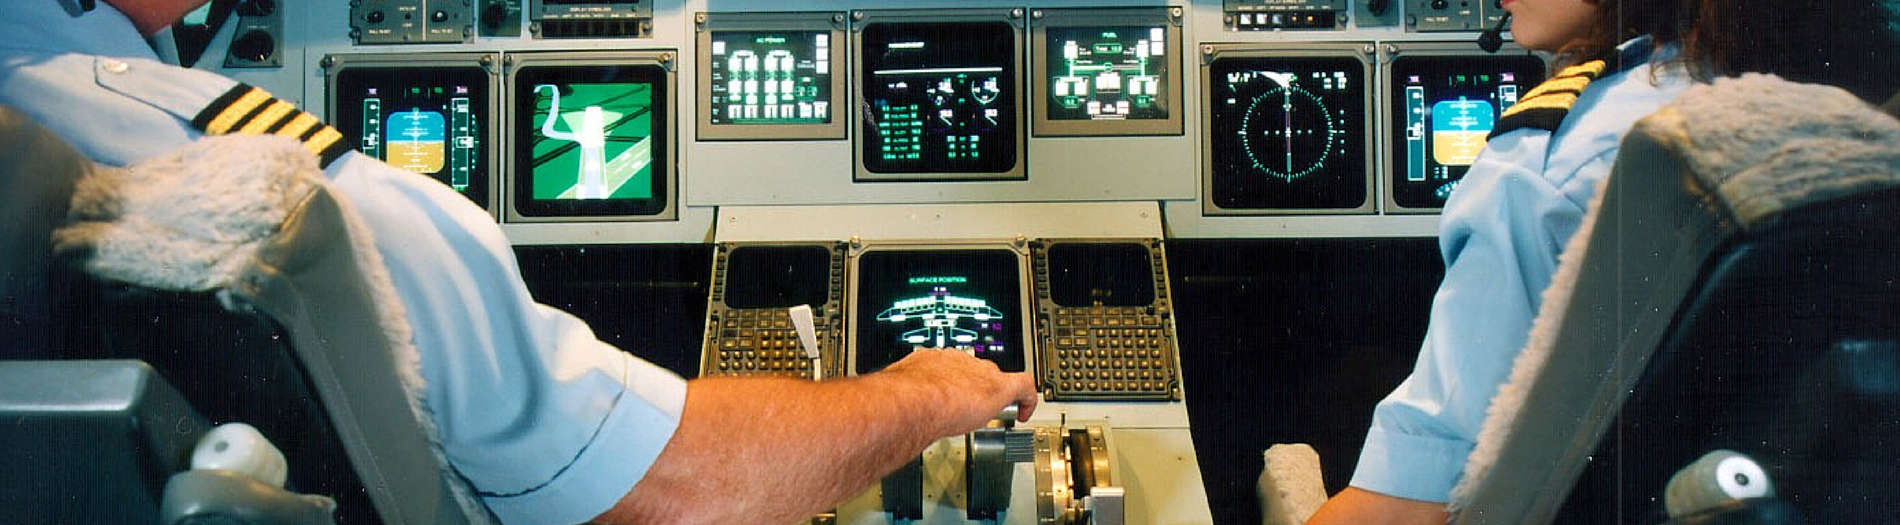 Photo of Slide 2 - Cockpit Slide